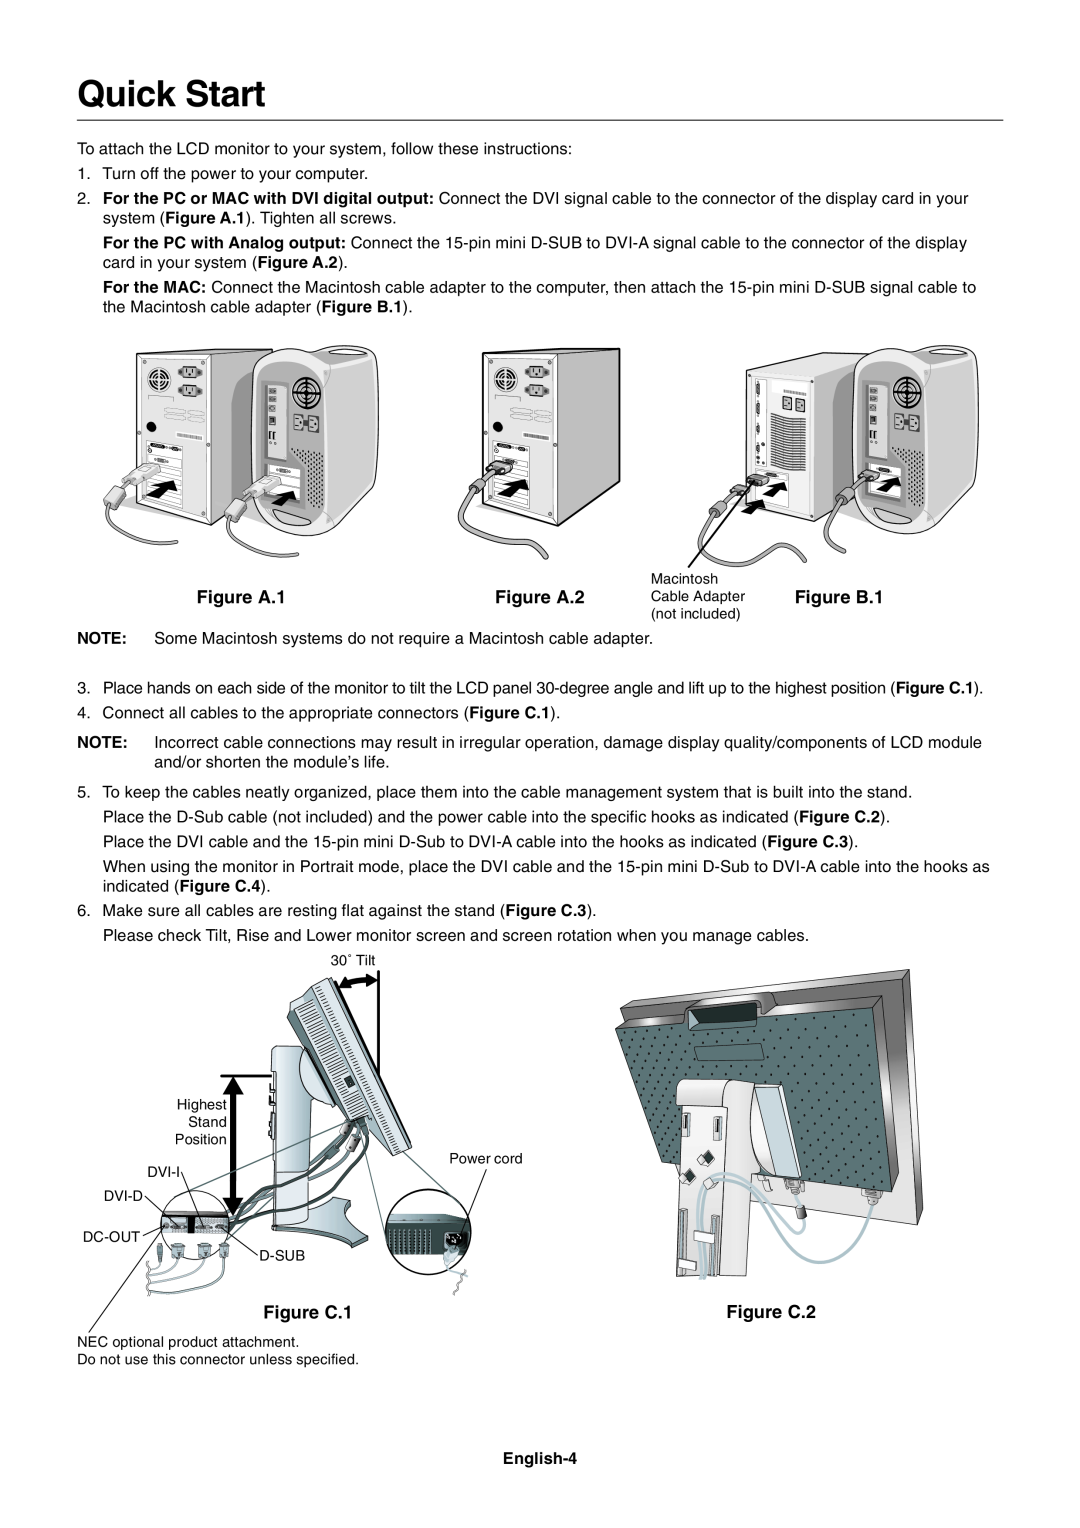 NEC 2690 user manual Quick Start, Figure A.1, Figure A.2, Figure C.1, Figure C.2 